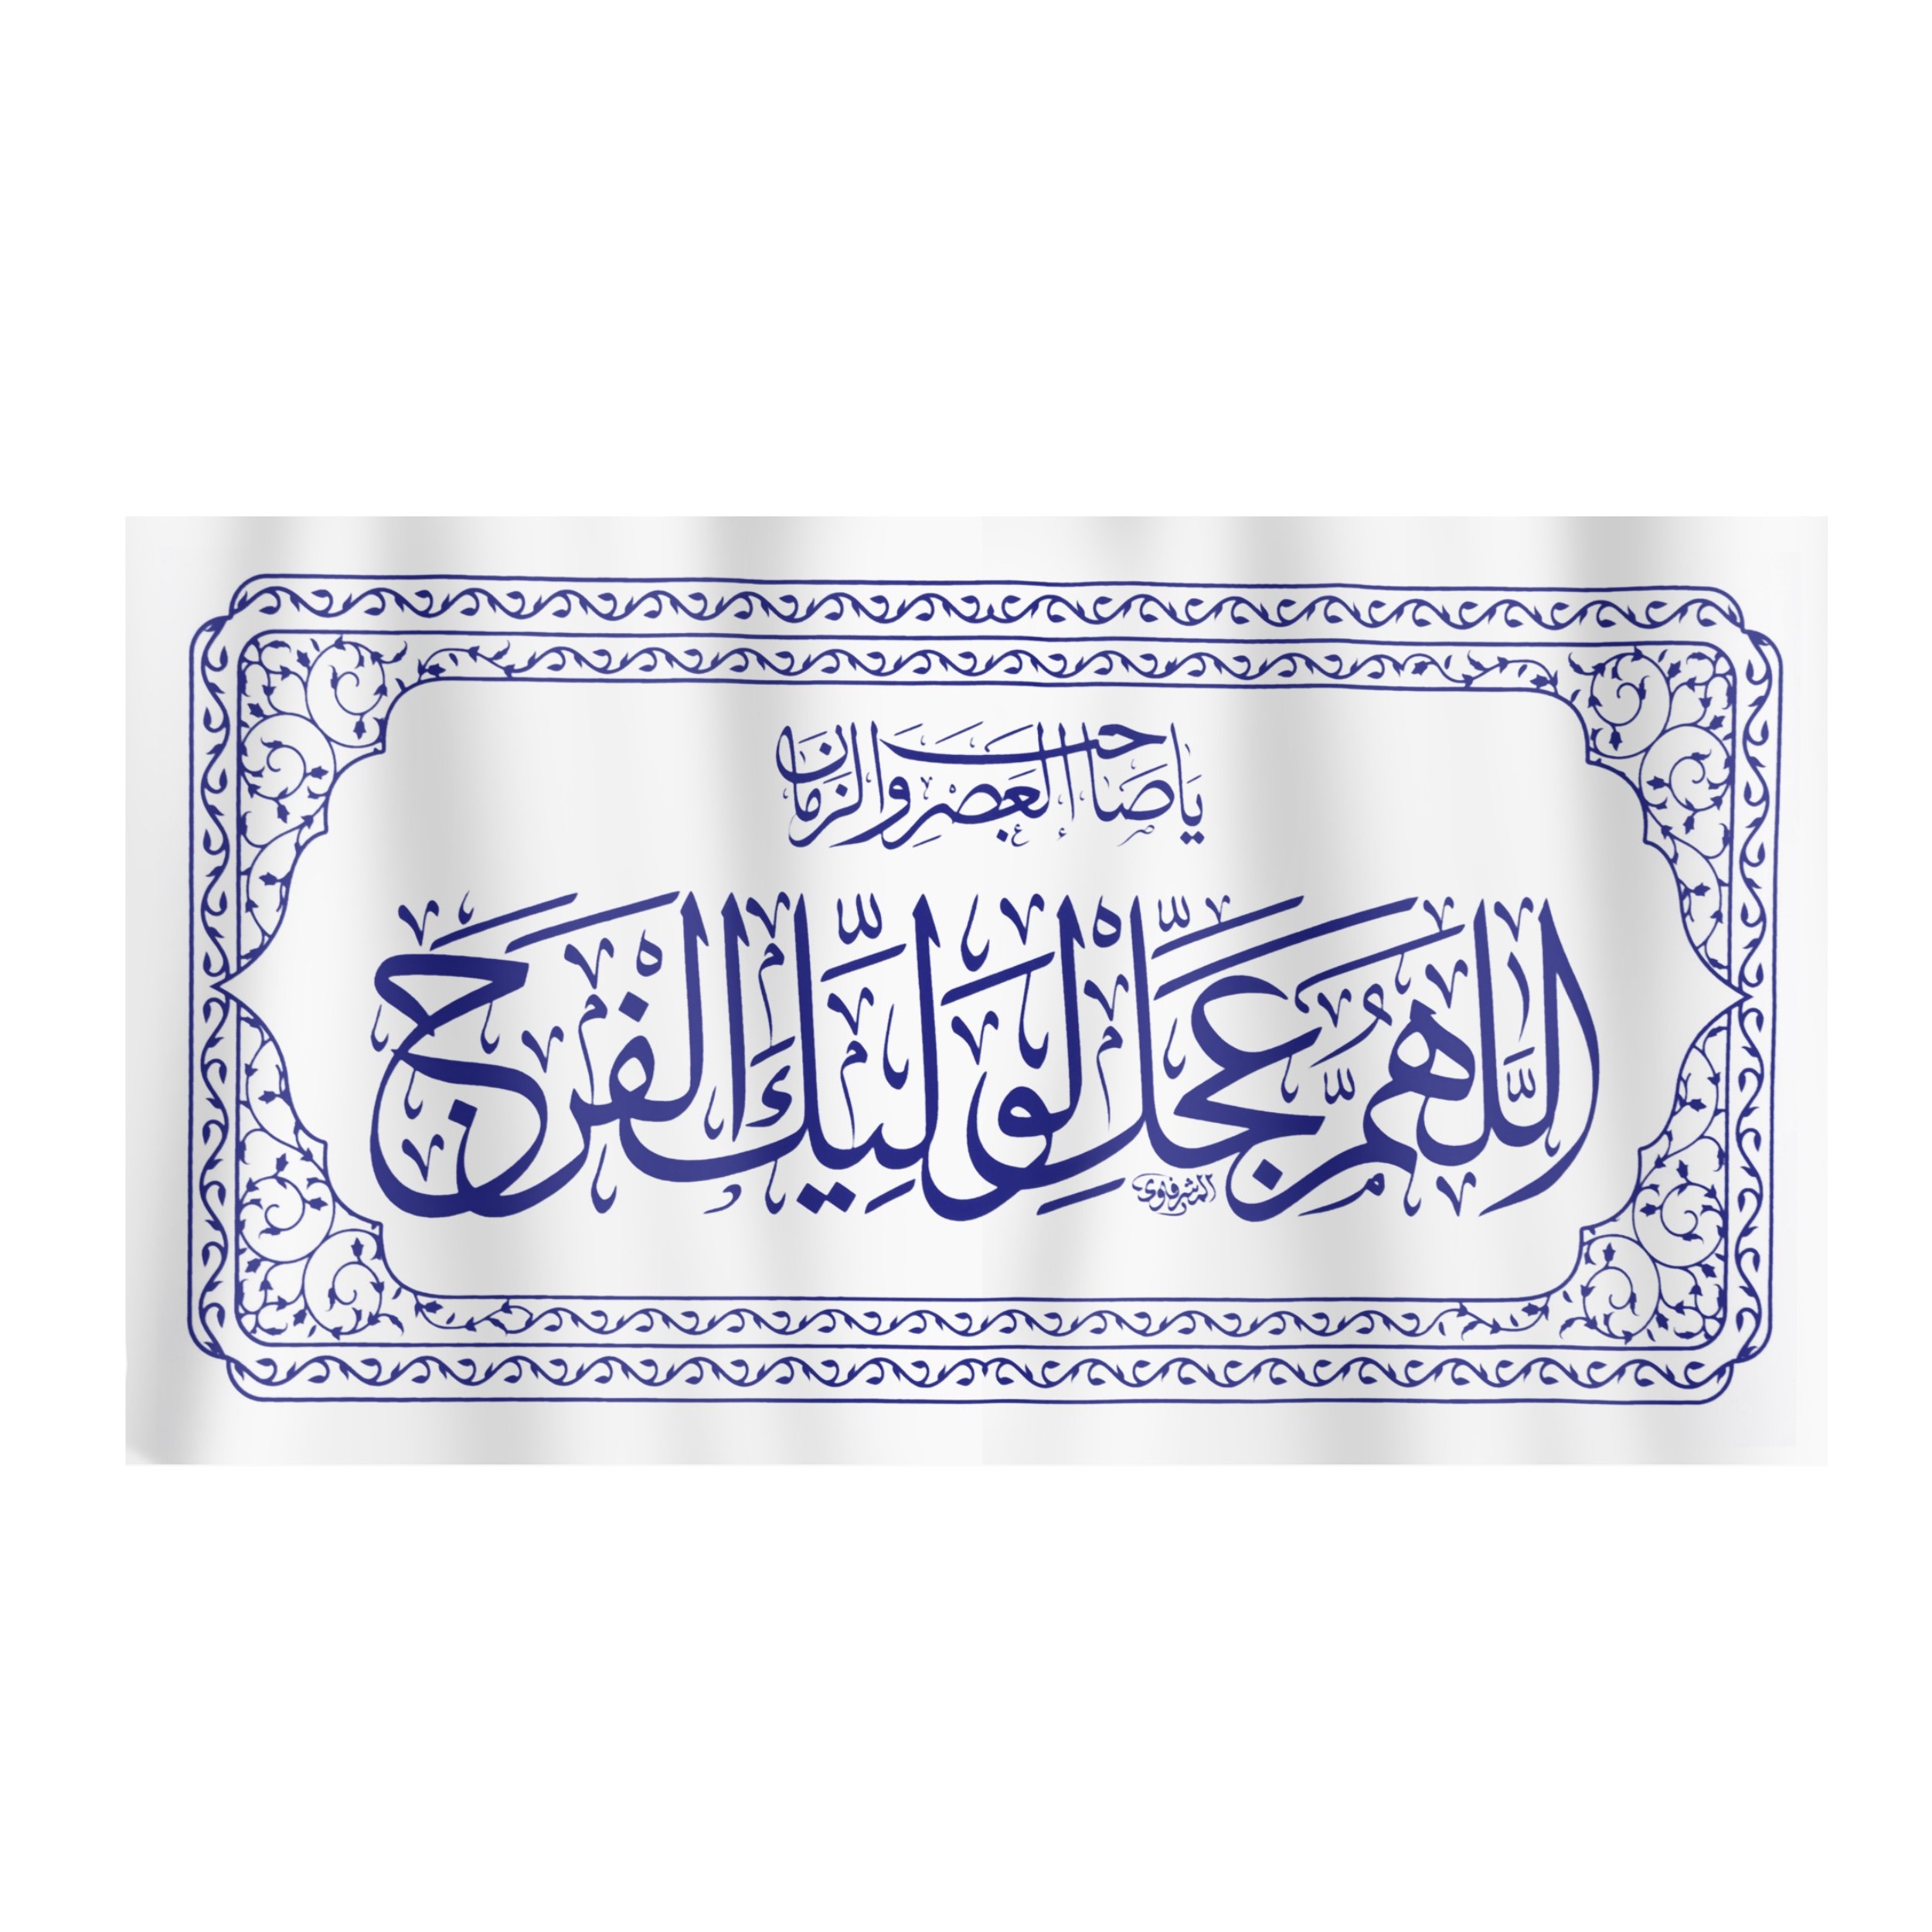 پرچم طرح اللهم عجل لولیک الفرج کد 20001342